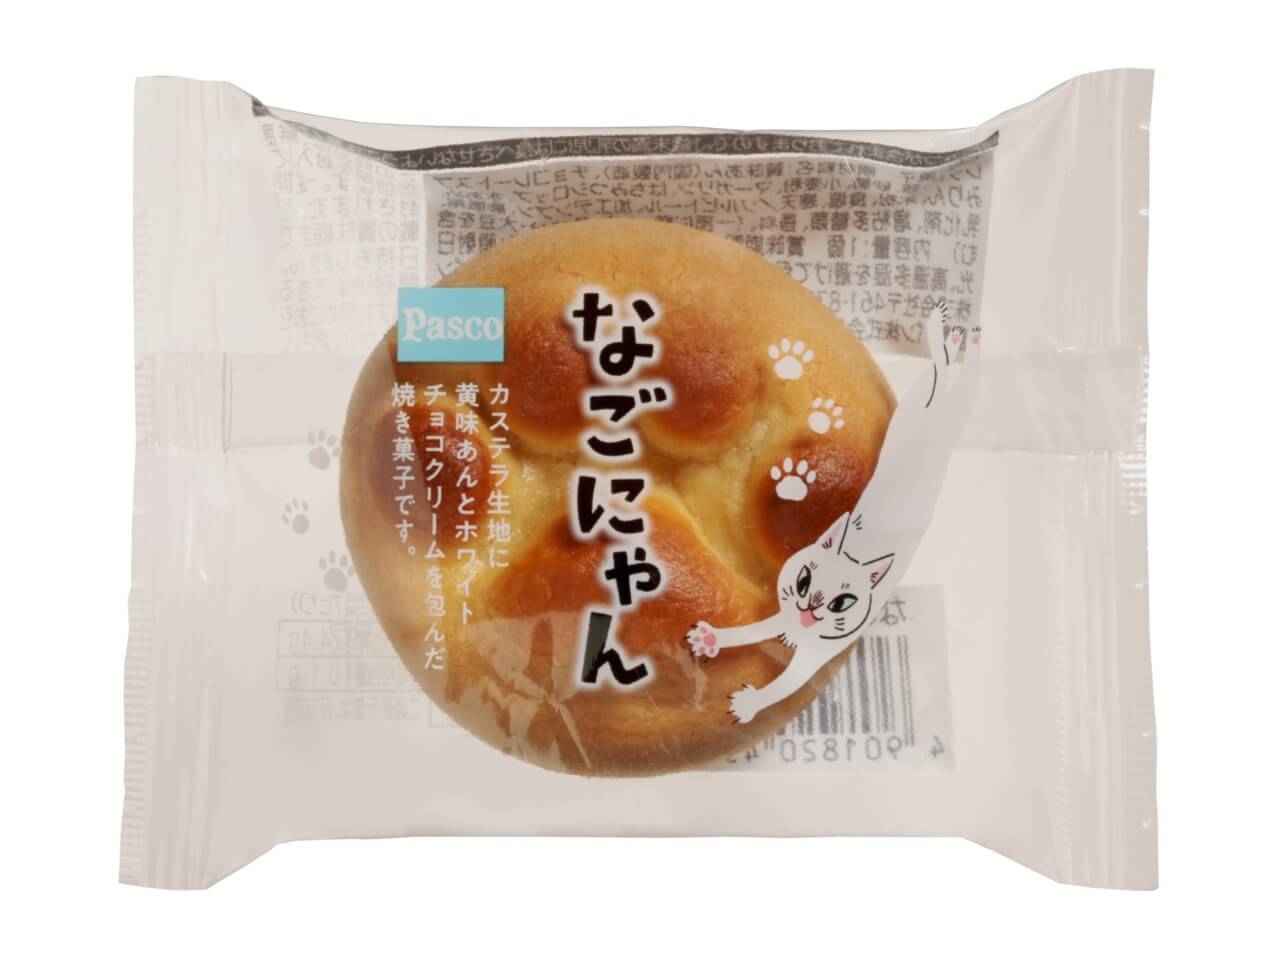 名古屋銘菓『なごやん』の猫バージョン、『なごにゃん』1個入の商品パッケージ